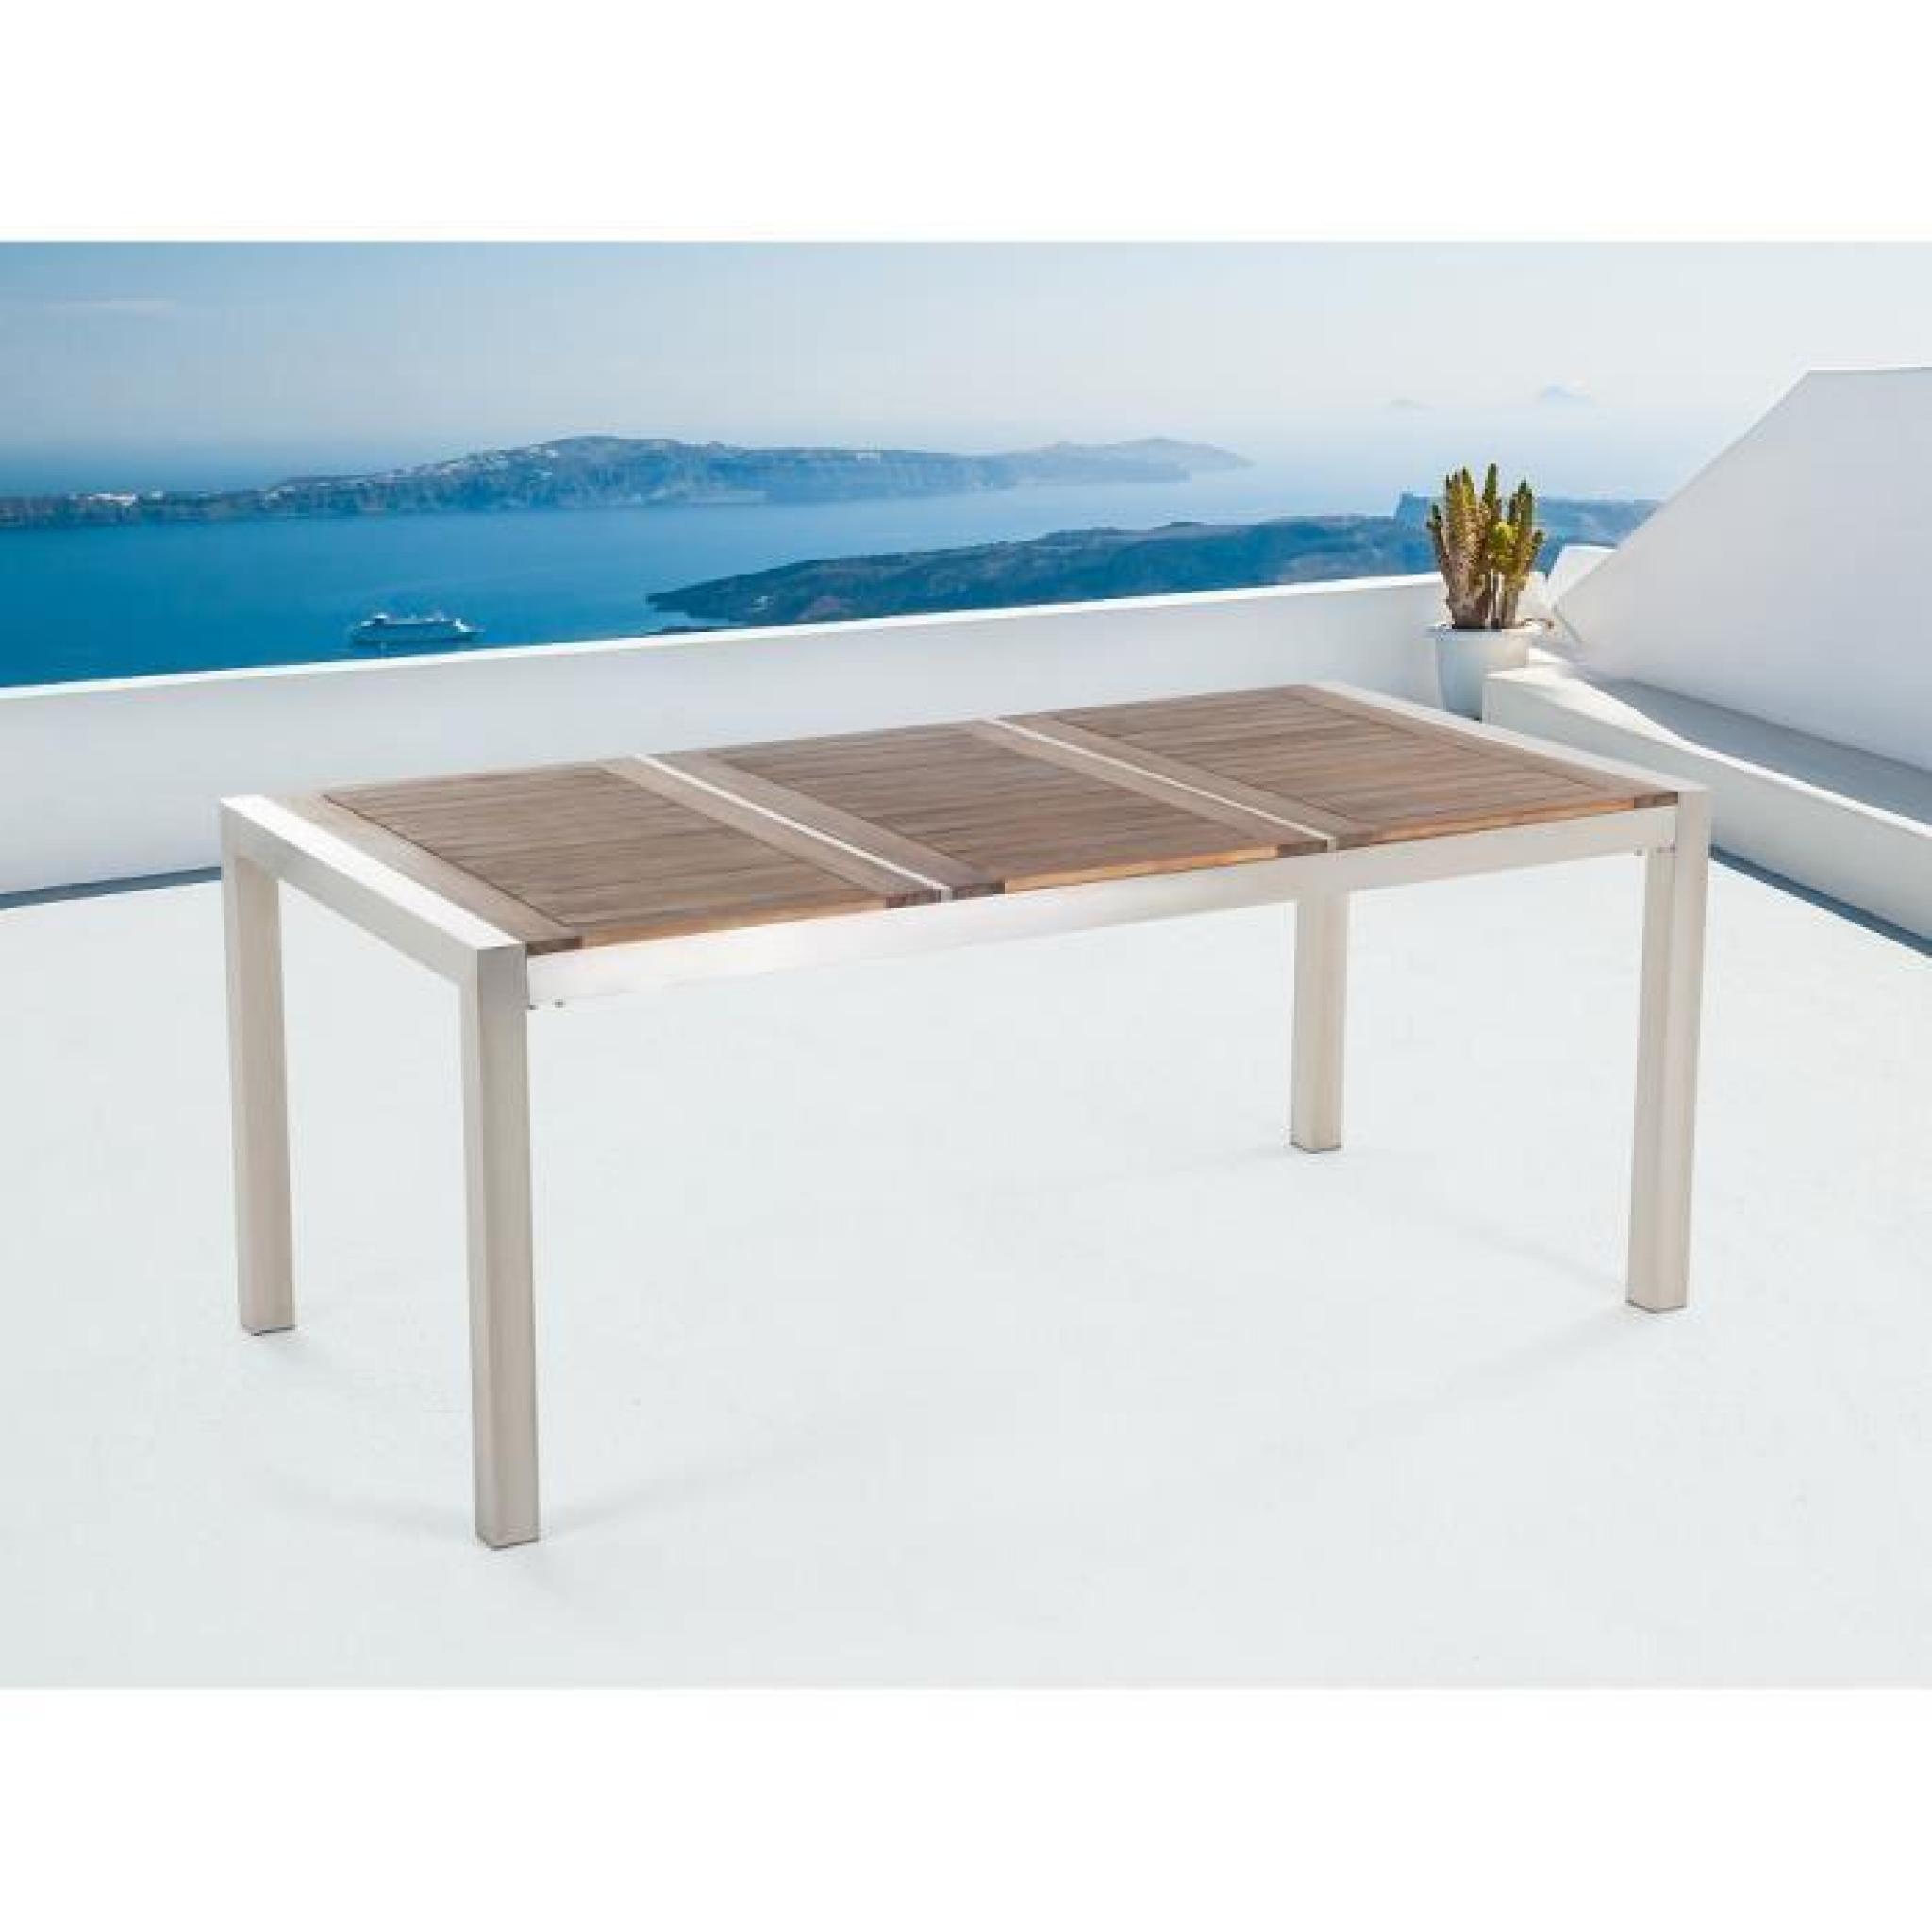 Table de jardin acier inox - plateau en bois - triple 180 cm - Grosseto